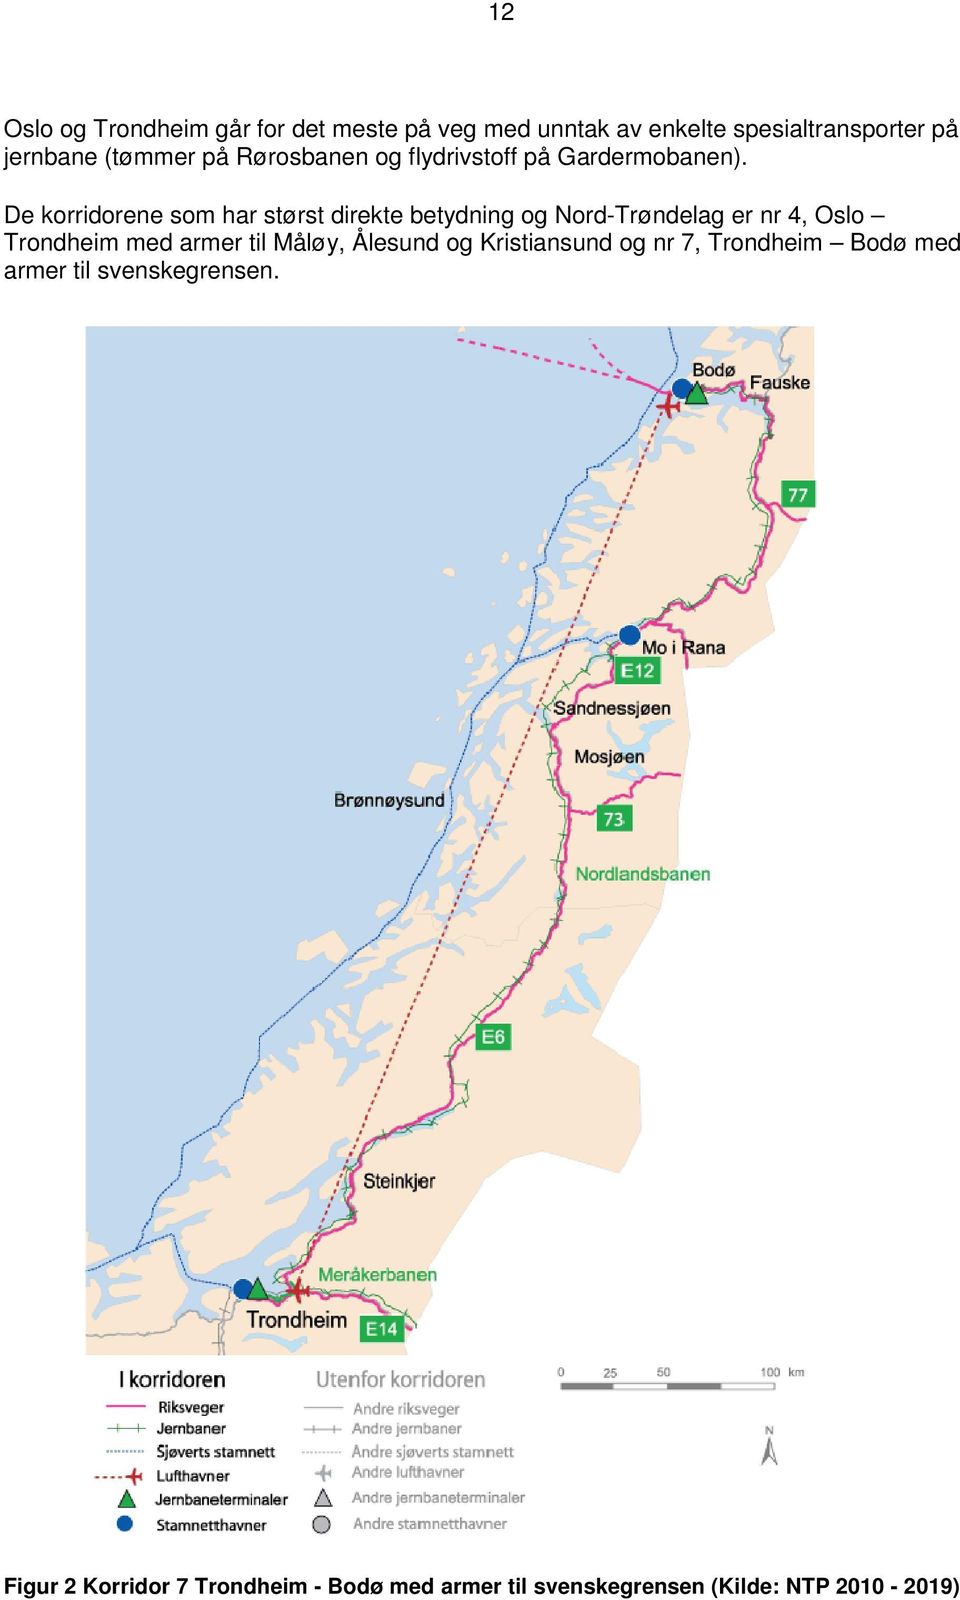 De korridorene som har størst direkte betydning og Nord-Trøndelag er nr 4, Oslo Trondheim med armer til